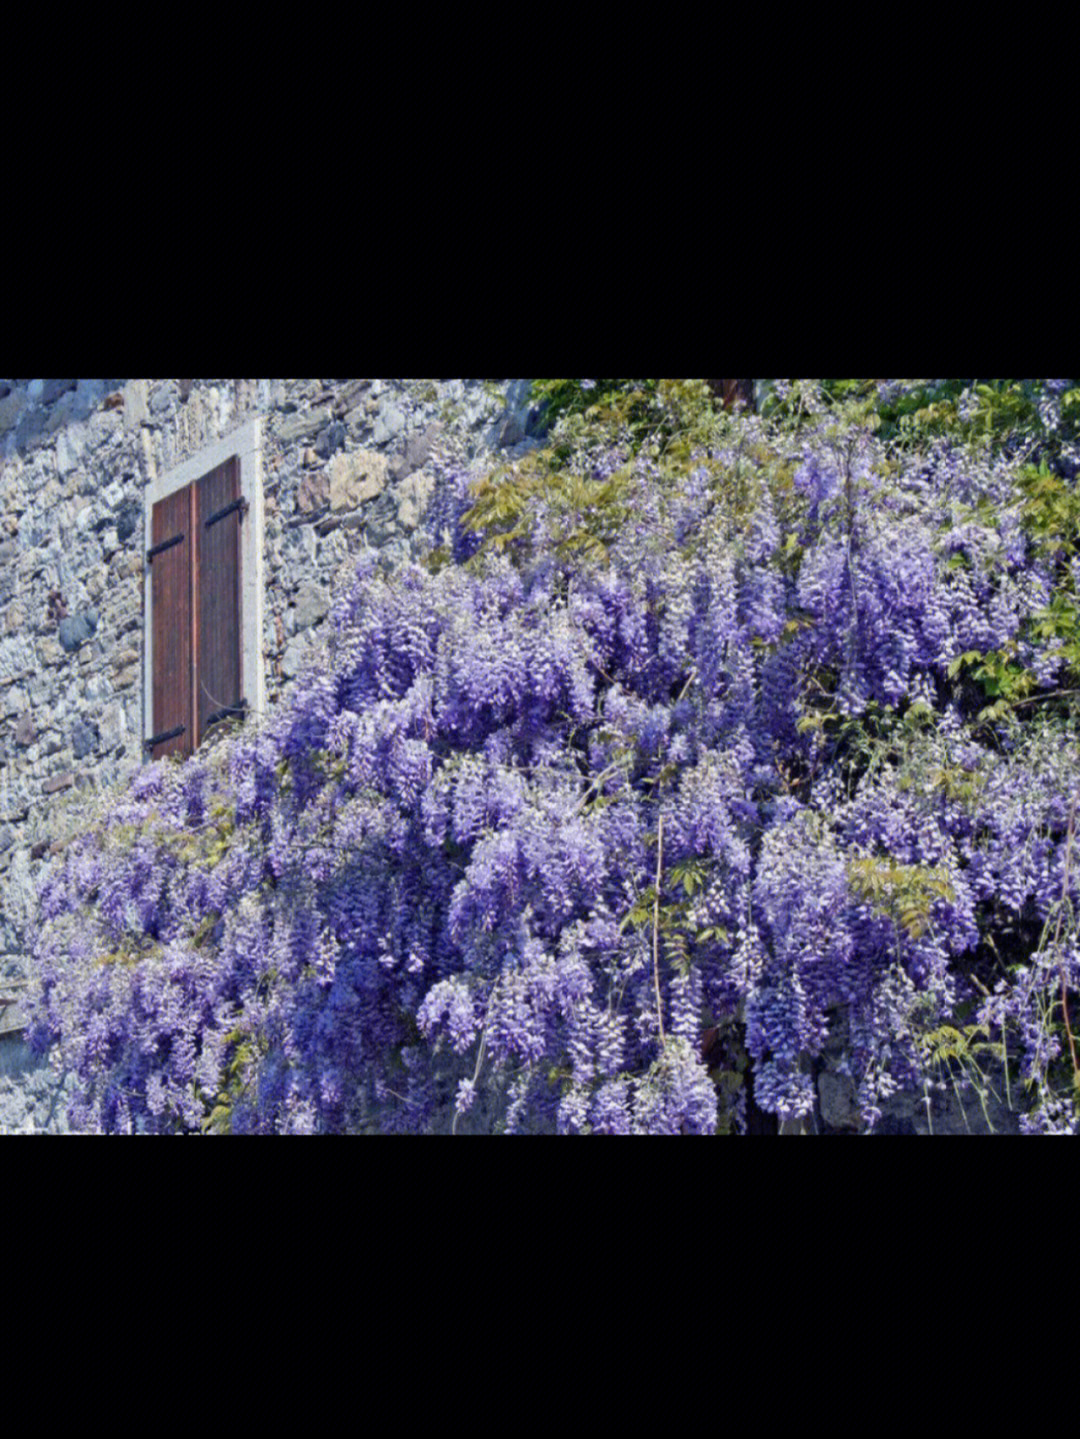 紫藤蓝月亮的花期图片